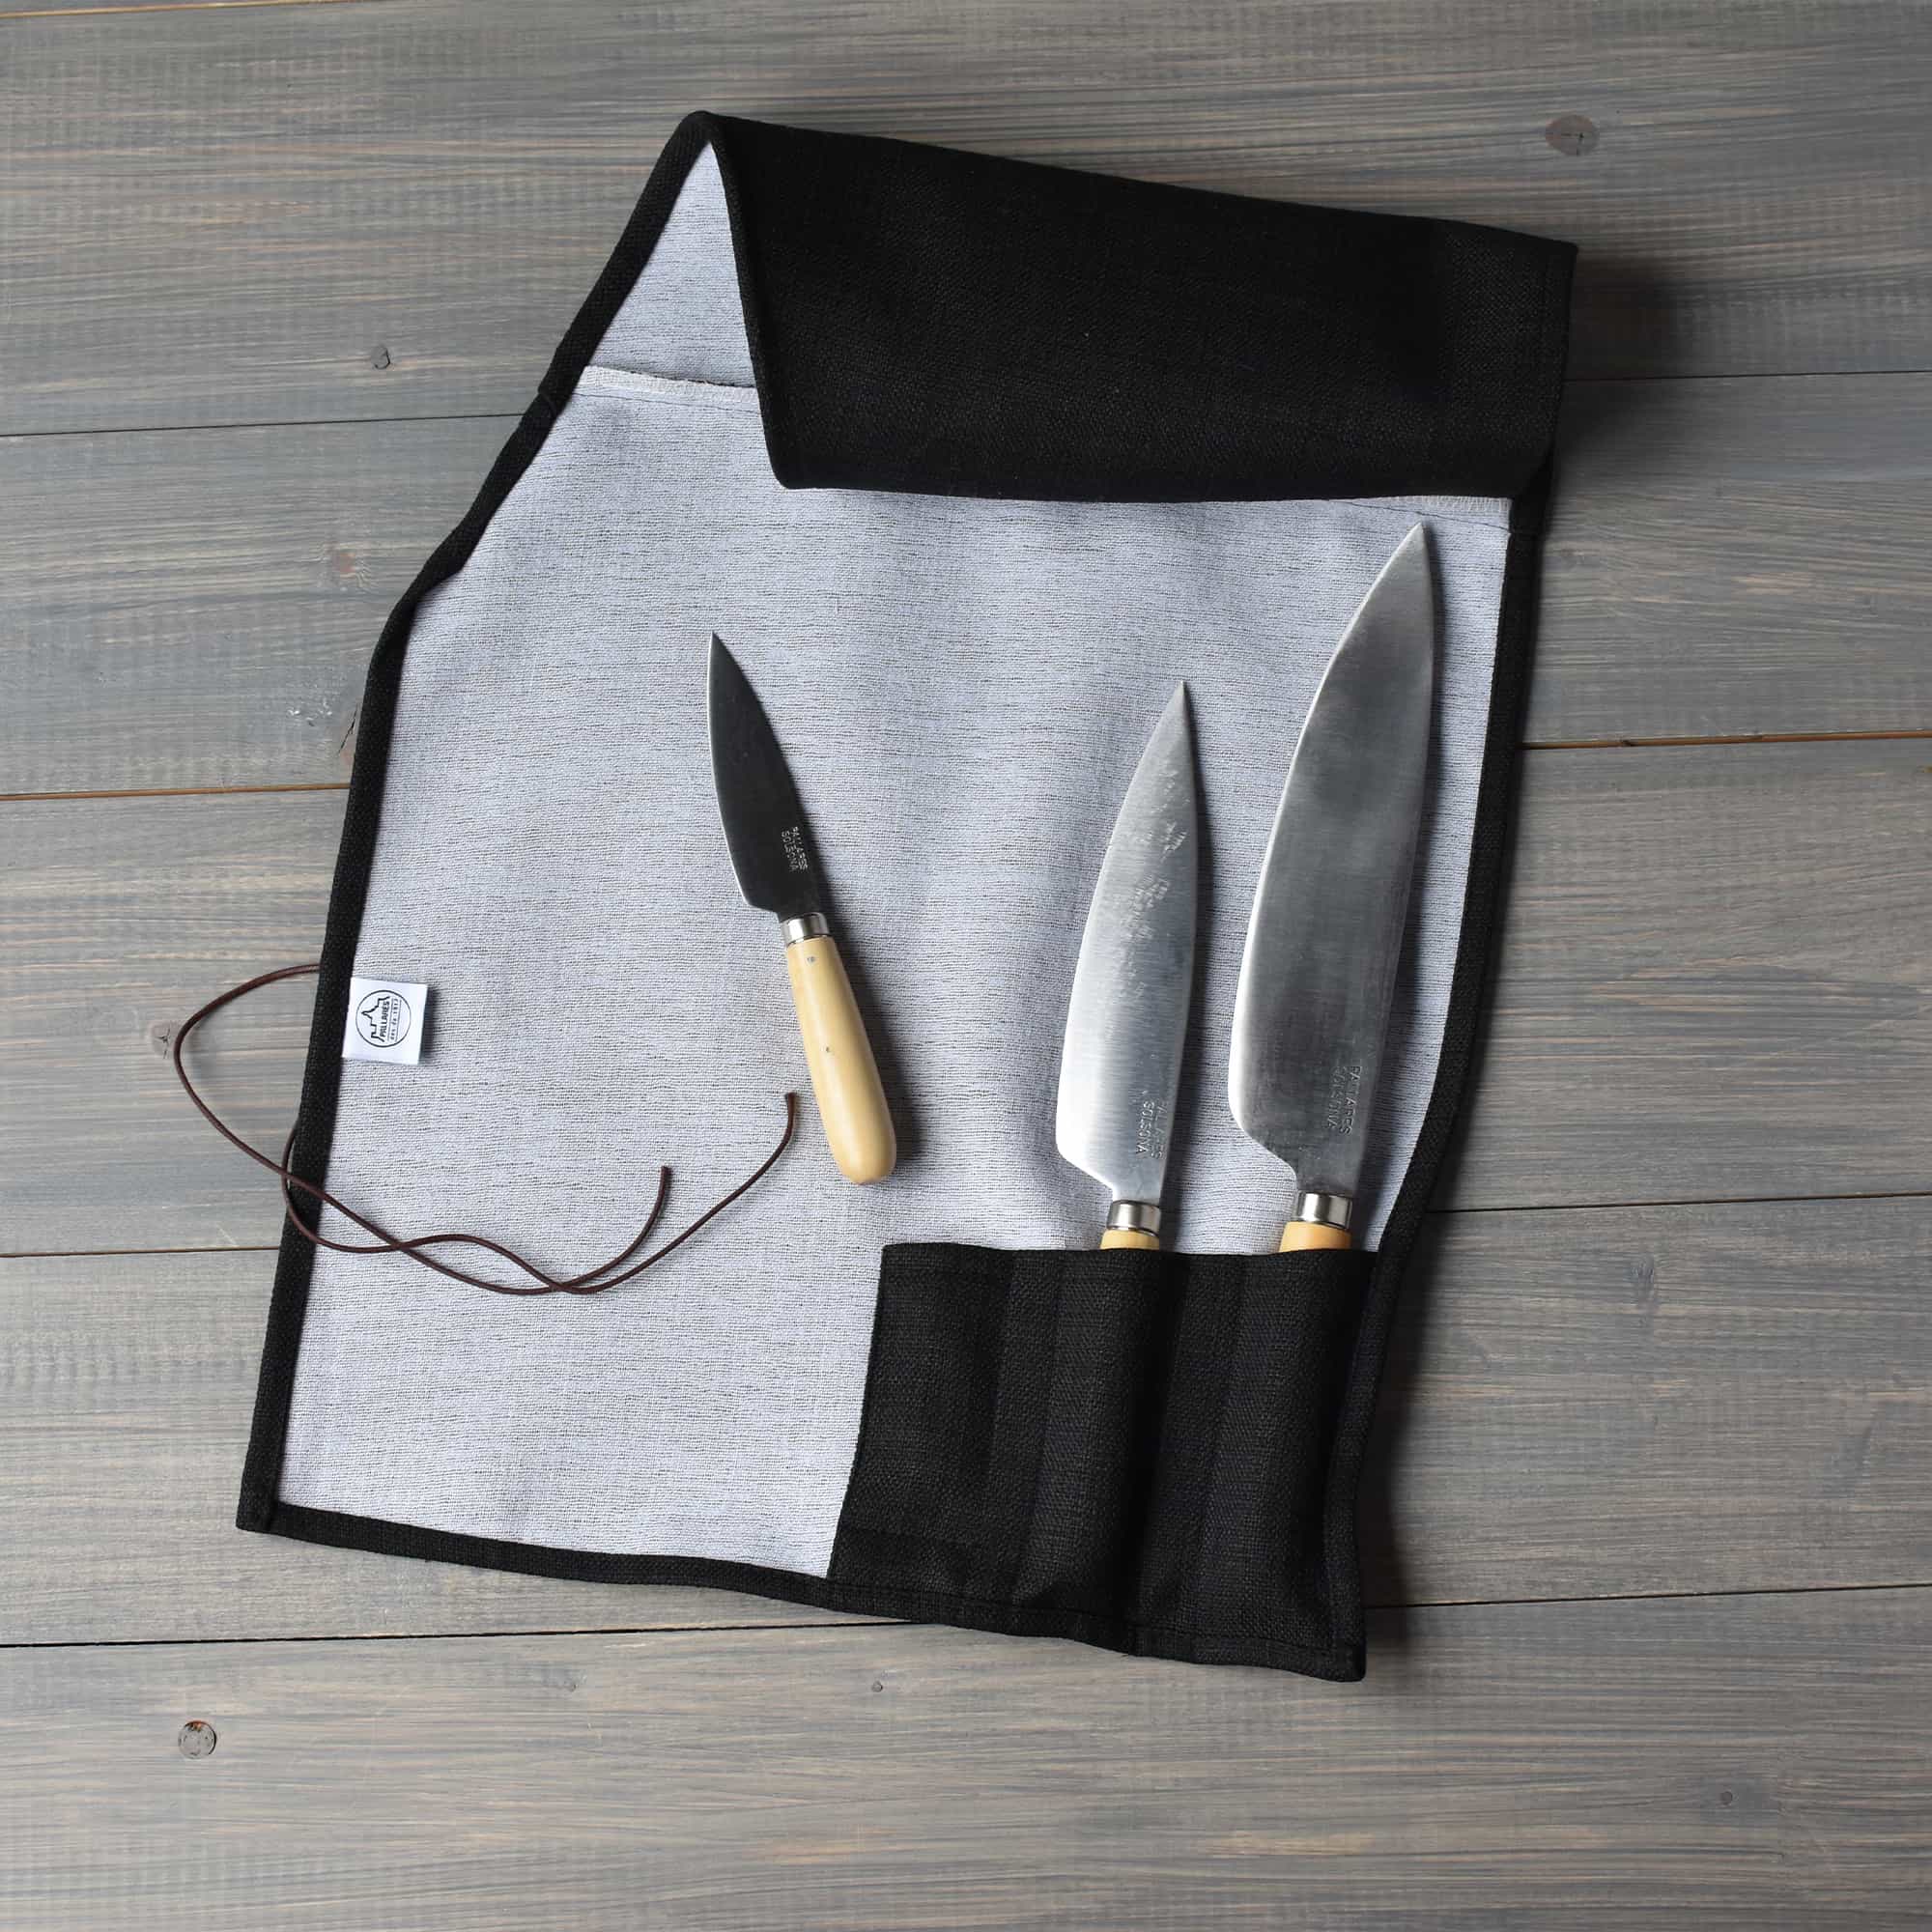 Tradisjonelle kjøkkenkniver i karbonstål / svart sett